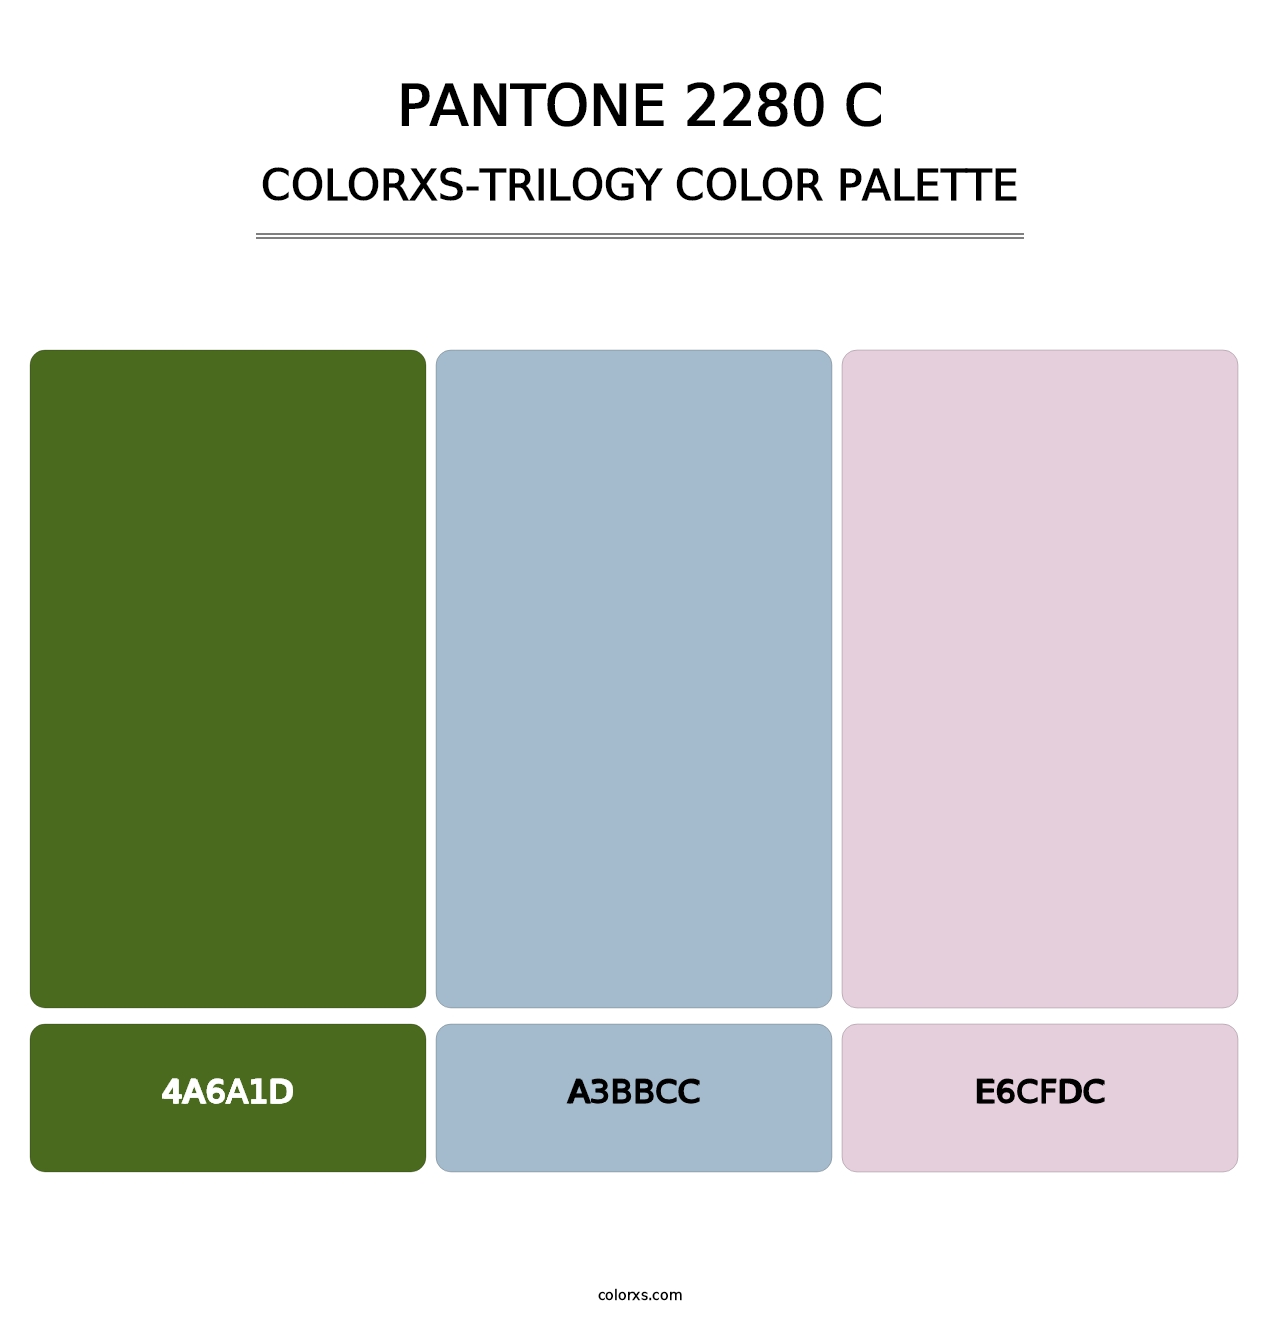 PANTONE 2280 C - Colorxs Trilogy Palette